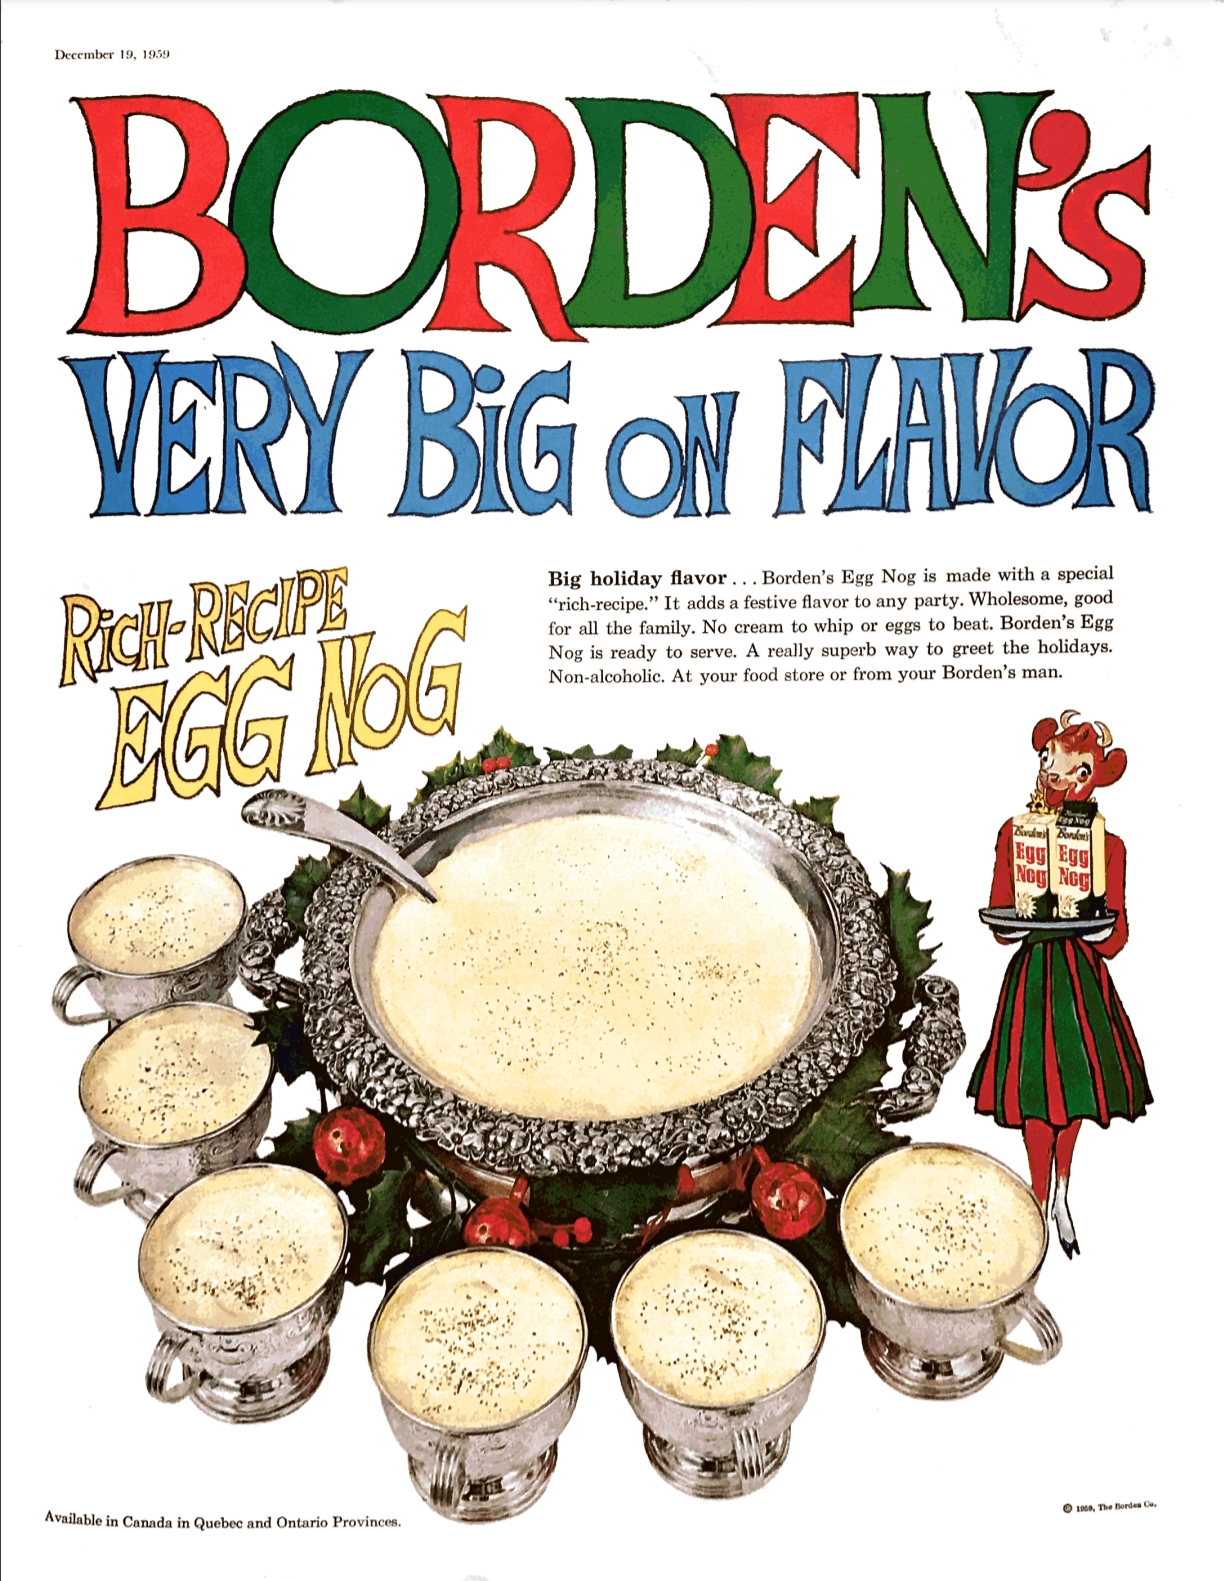 a promo for Borden's Rich-Recipe Egg Nog